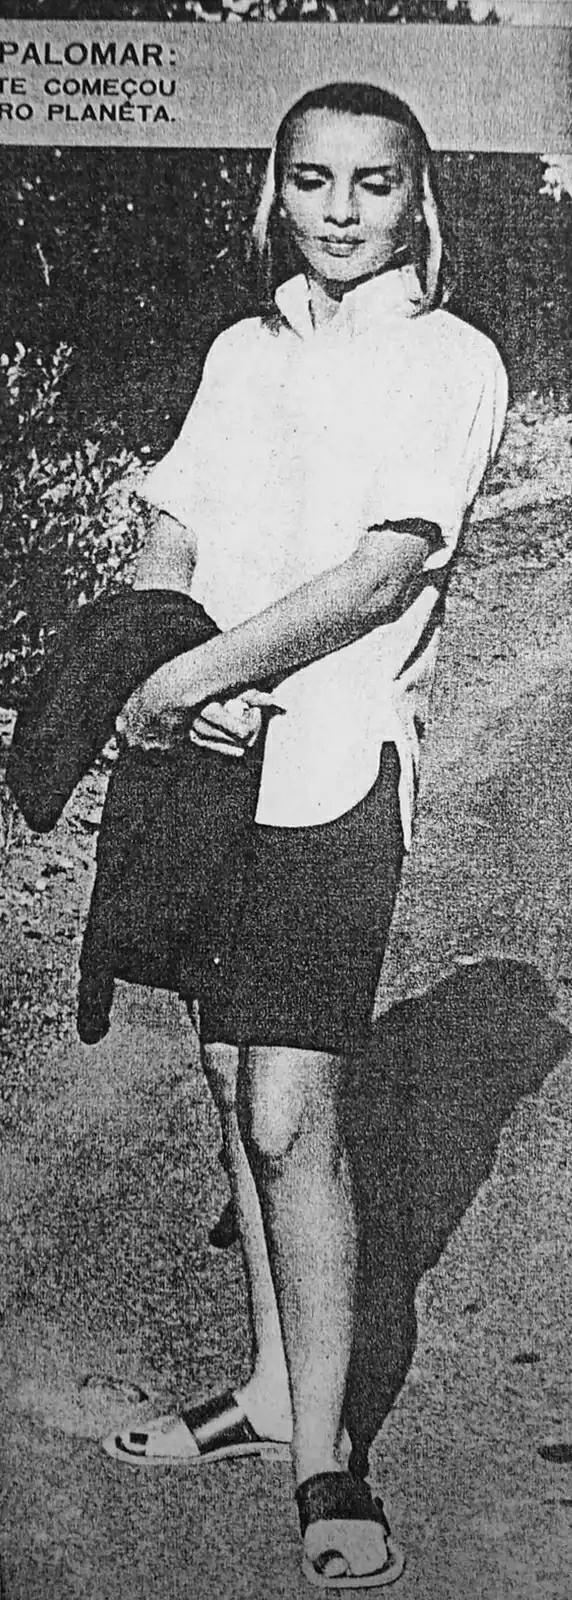 Người phụ nữ kỳ lạ trong Hội nghị UFO Palomar năm 1954